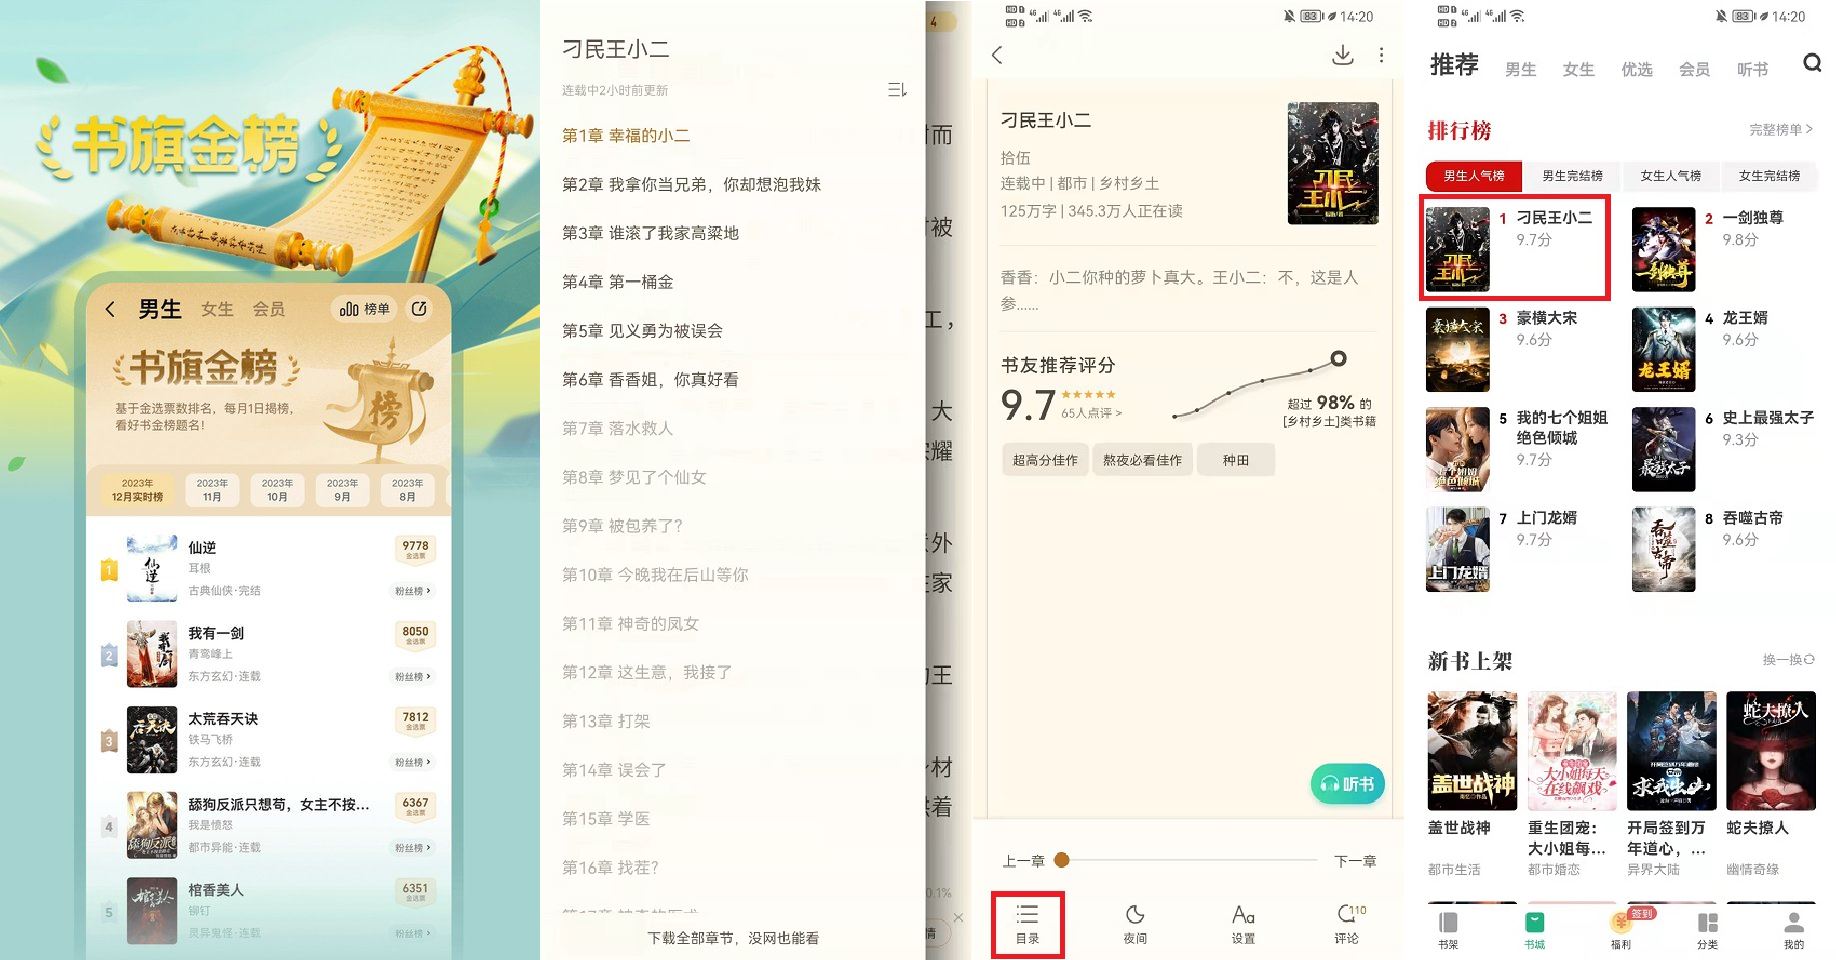 安卓书旗小说v12.1.7.215解锁会员海量免费小说